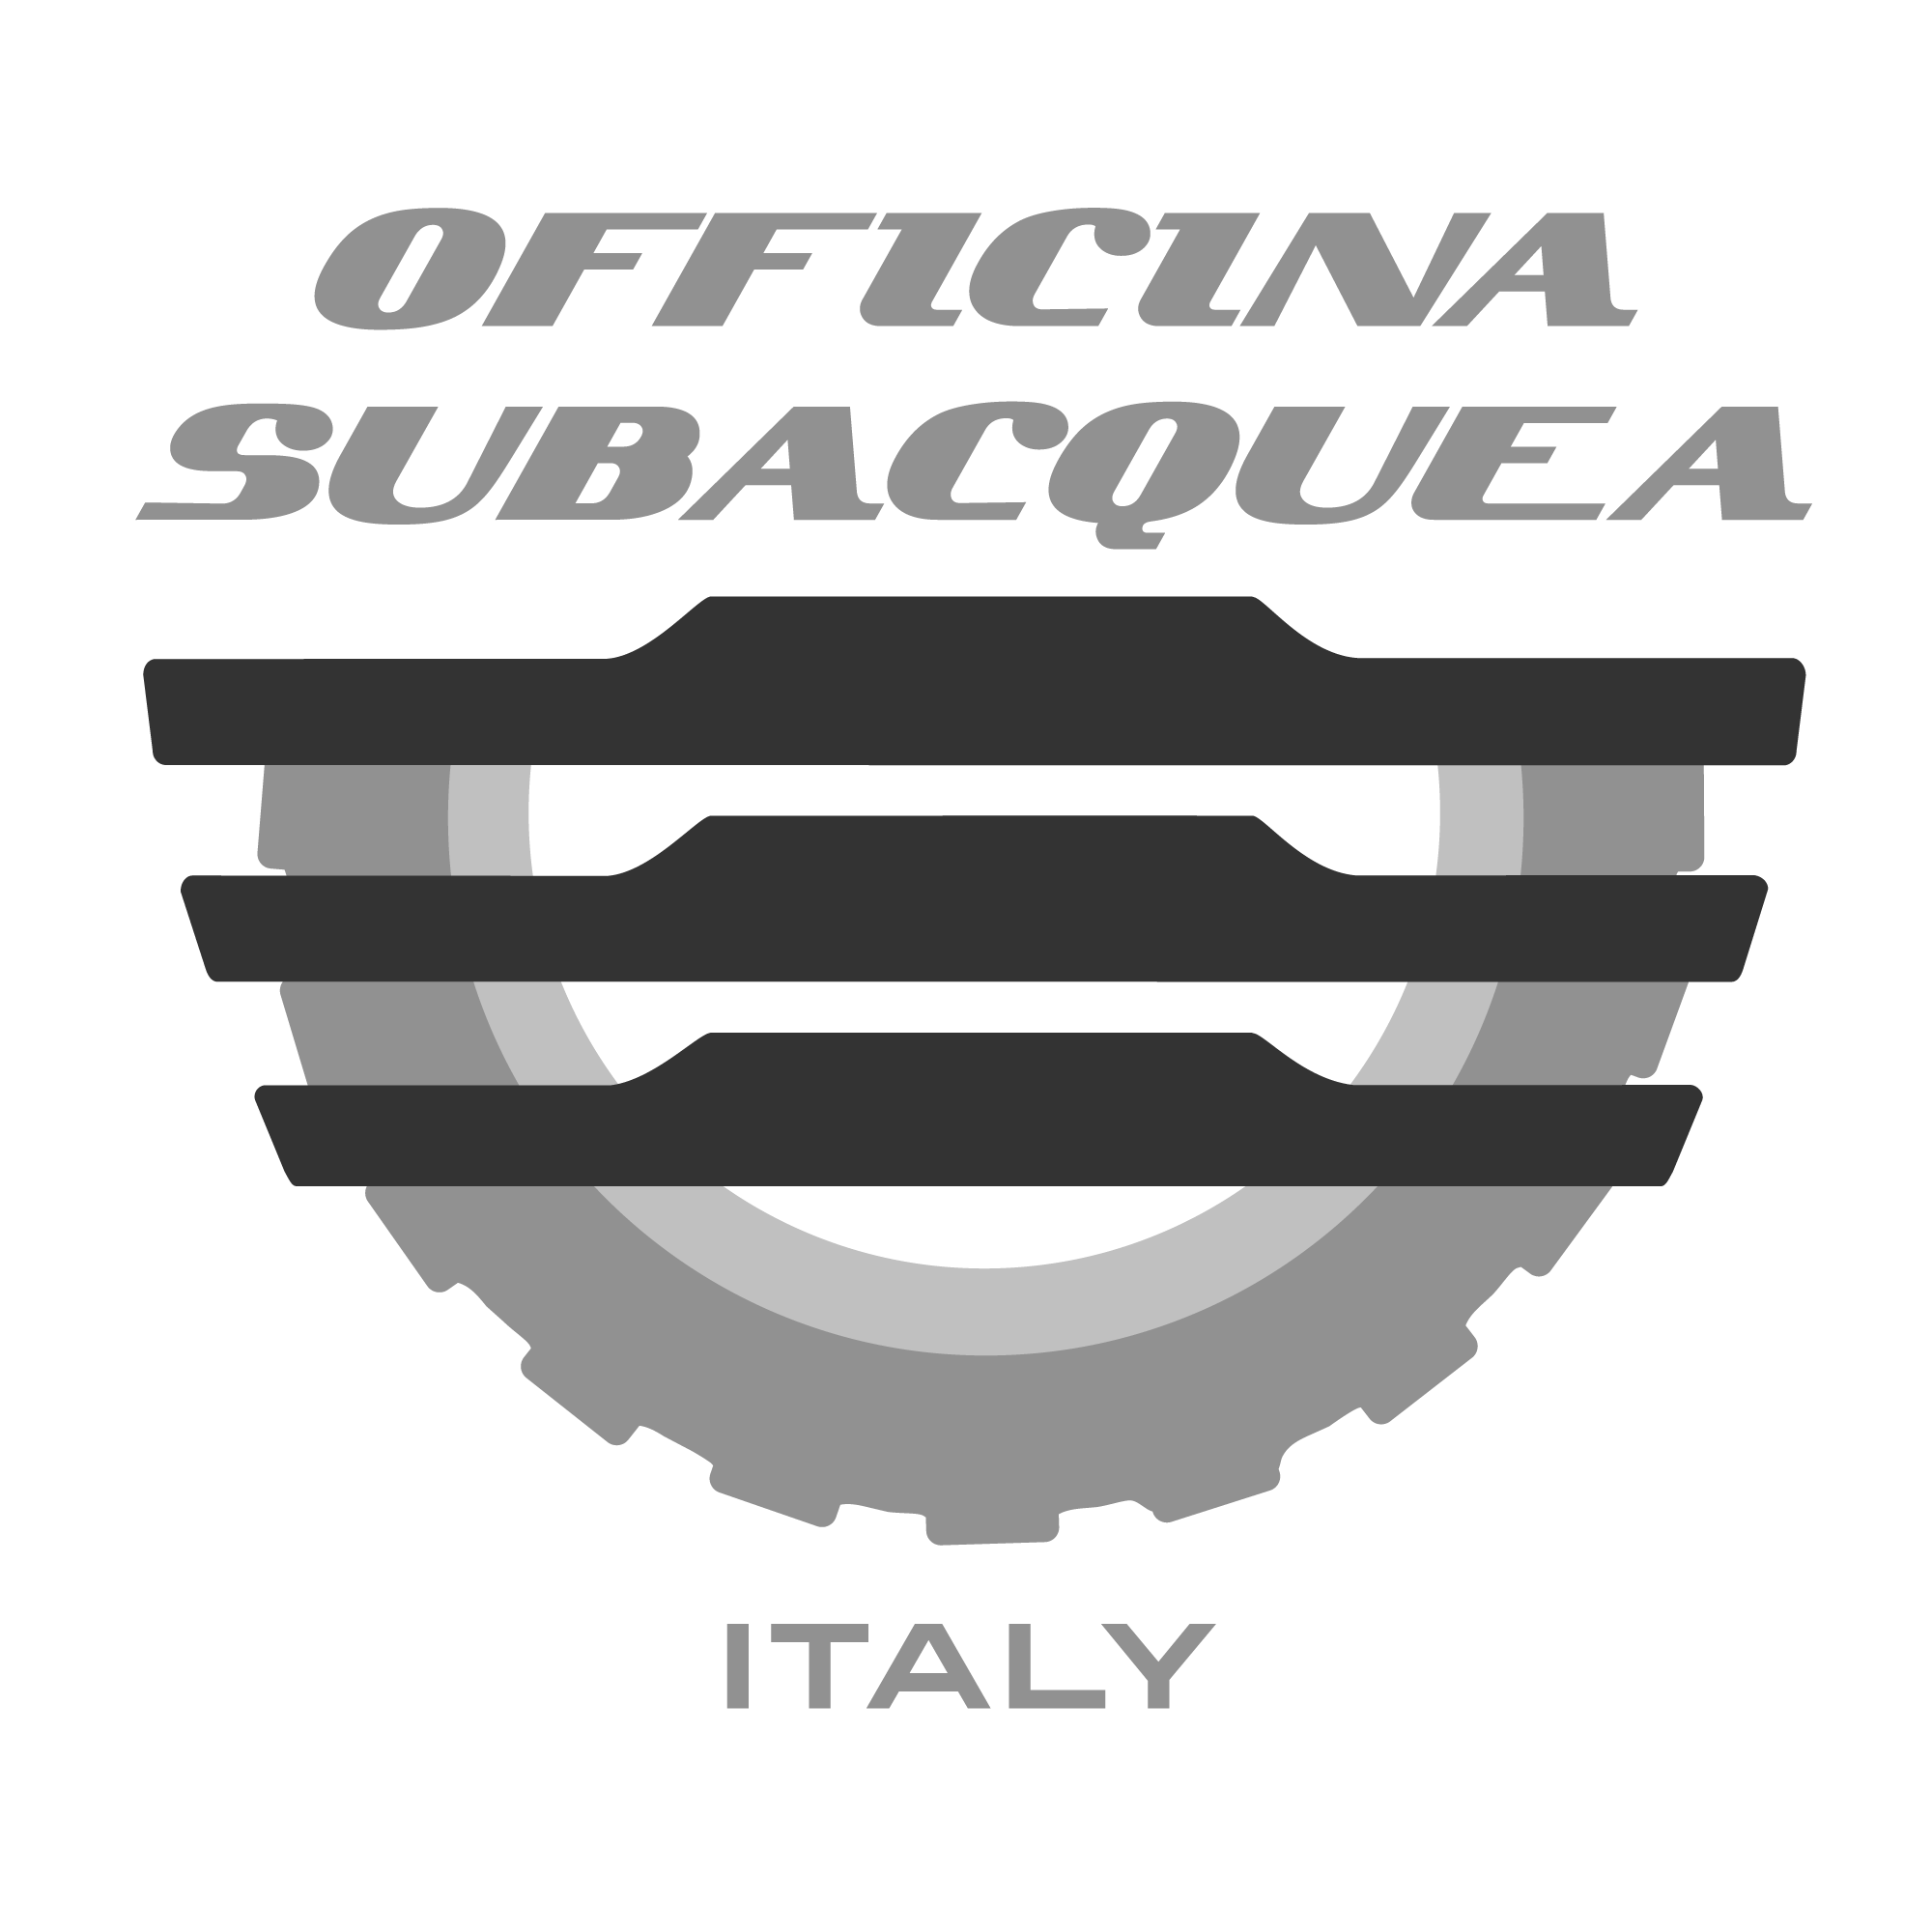 Officina Subacquea Italiana